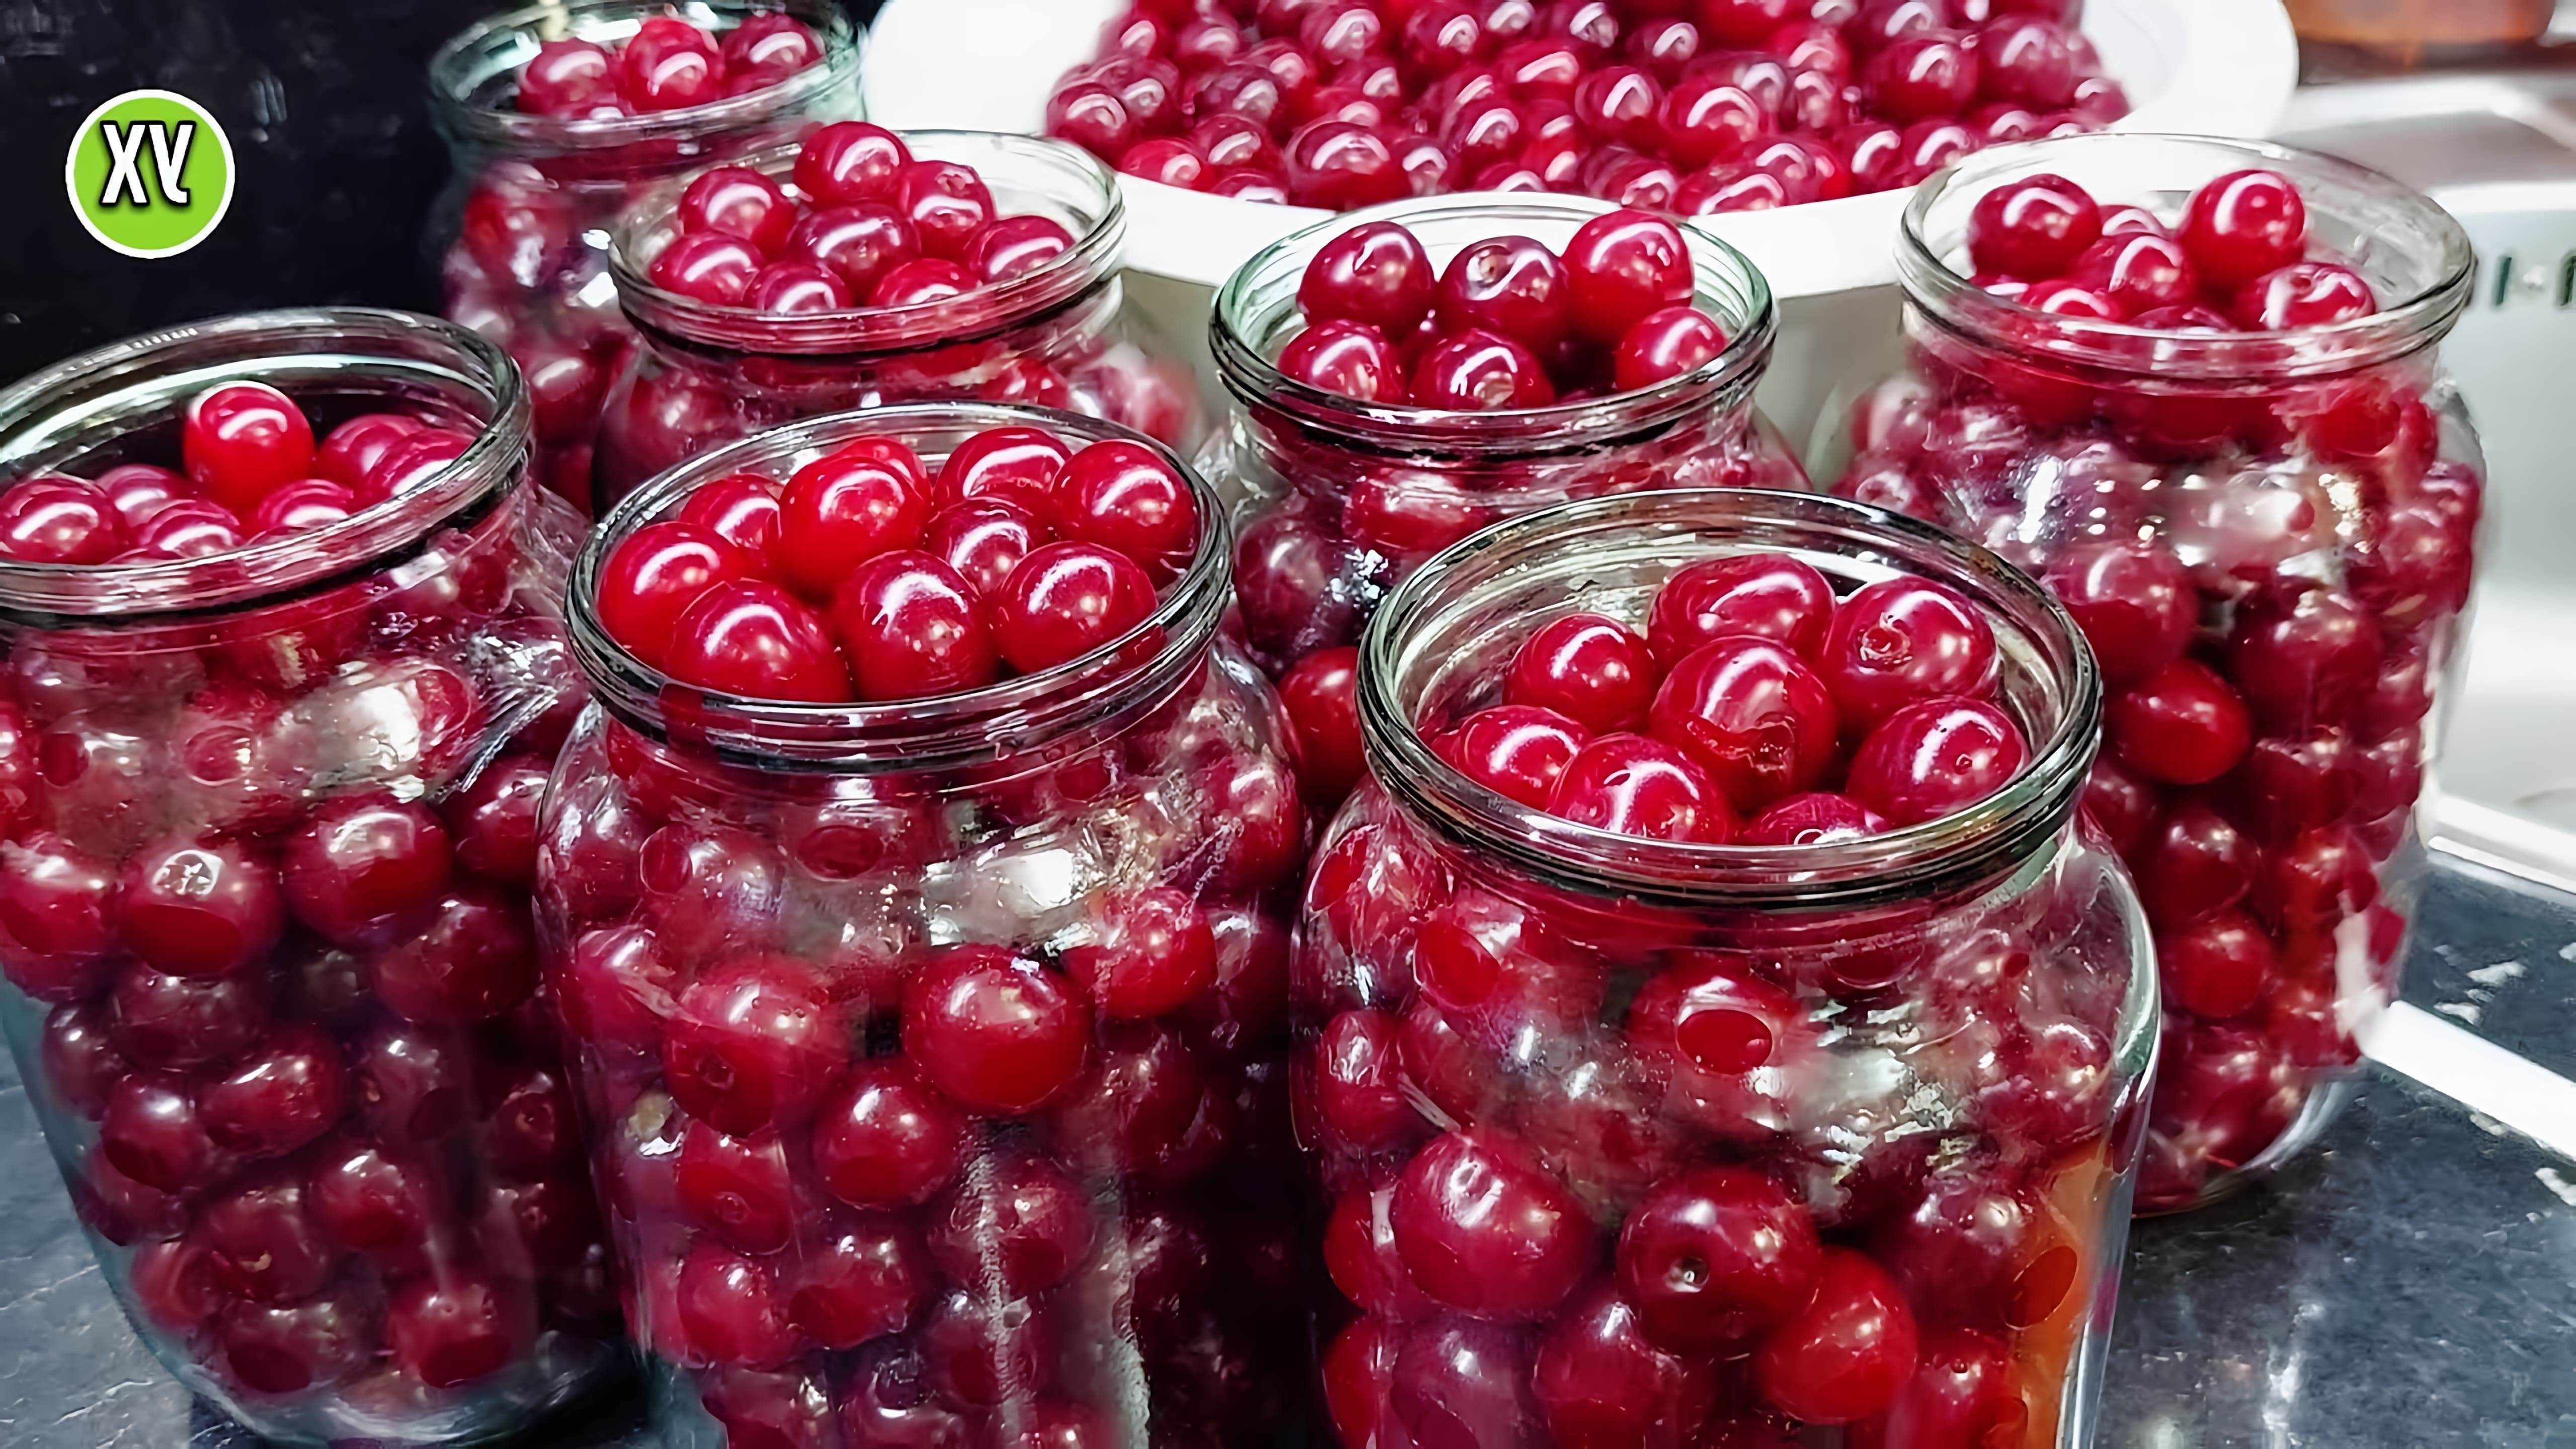 Видео демонстрирует простой рецепт консервирования вишни на зиму без использования сахара или стерилизации